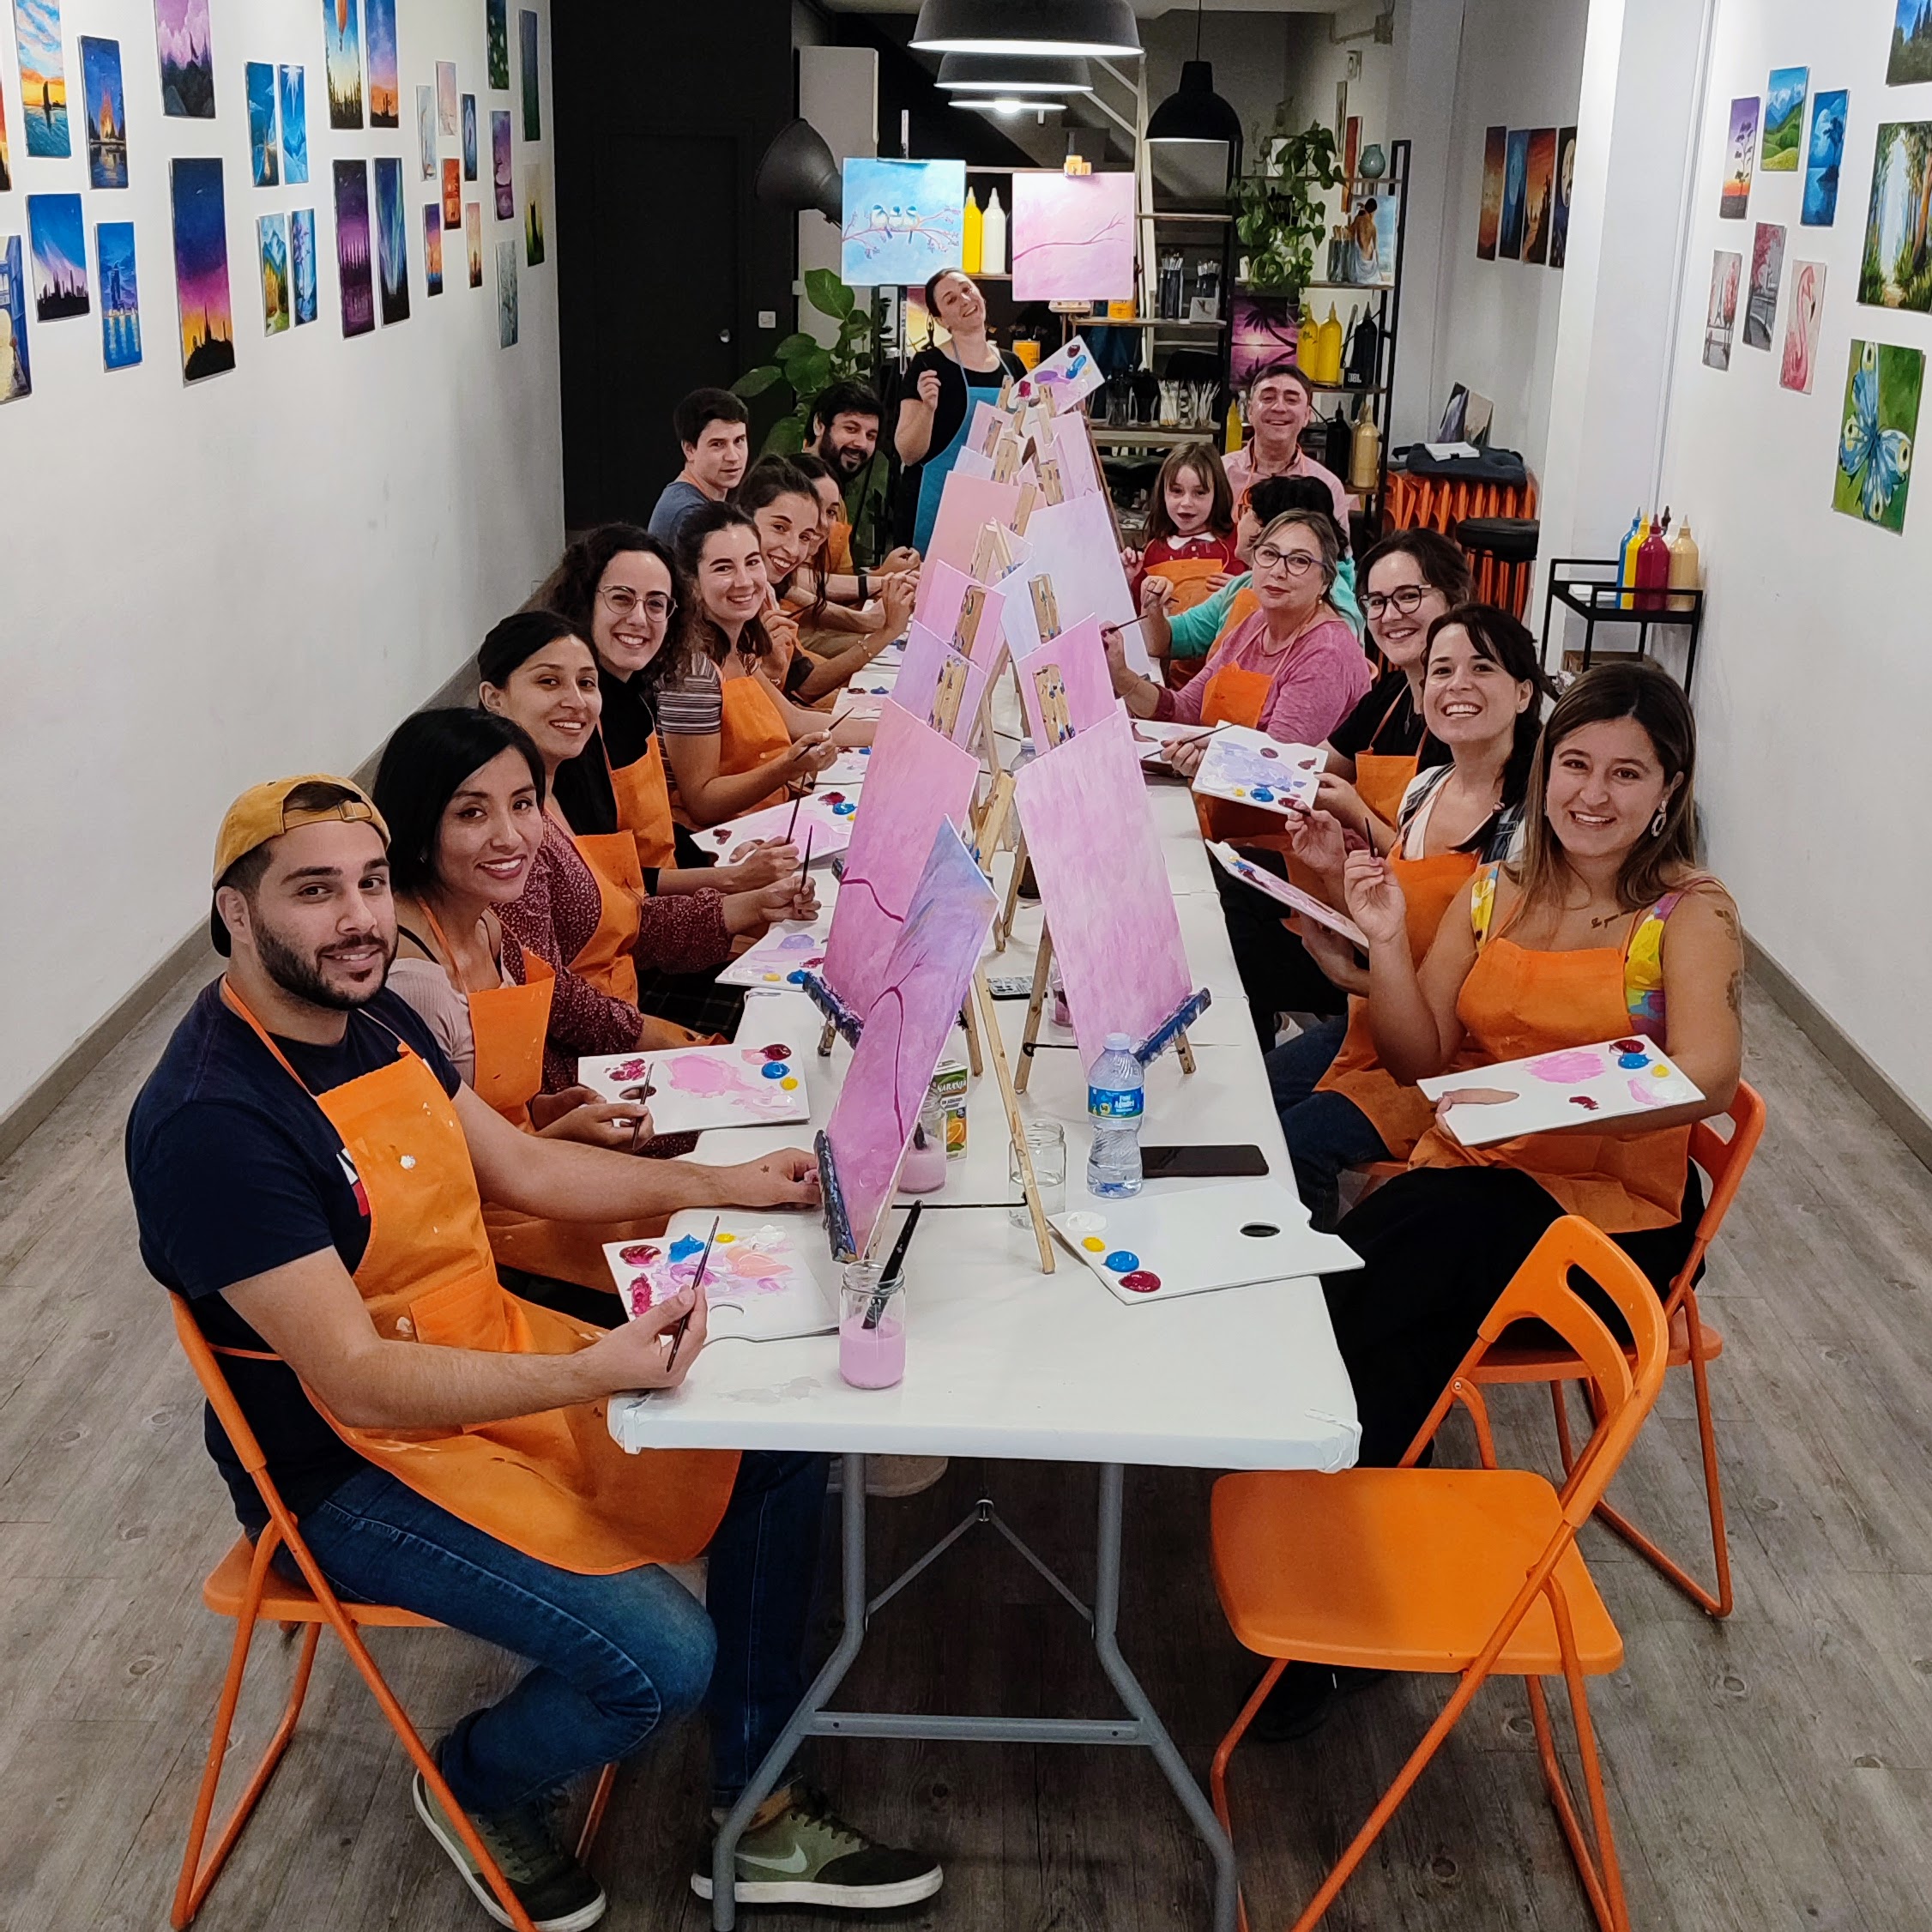 Petirrojos pintar actividades con niños familia pintura arte Barcelona Pincelea